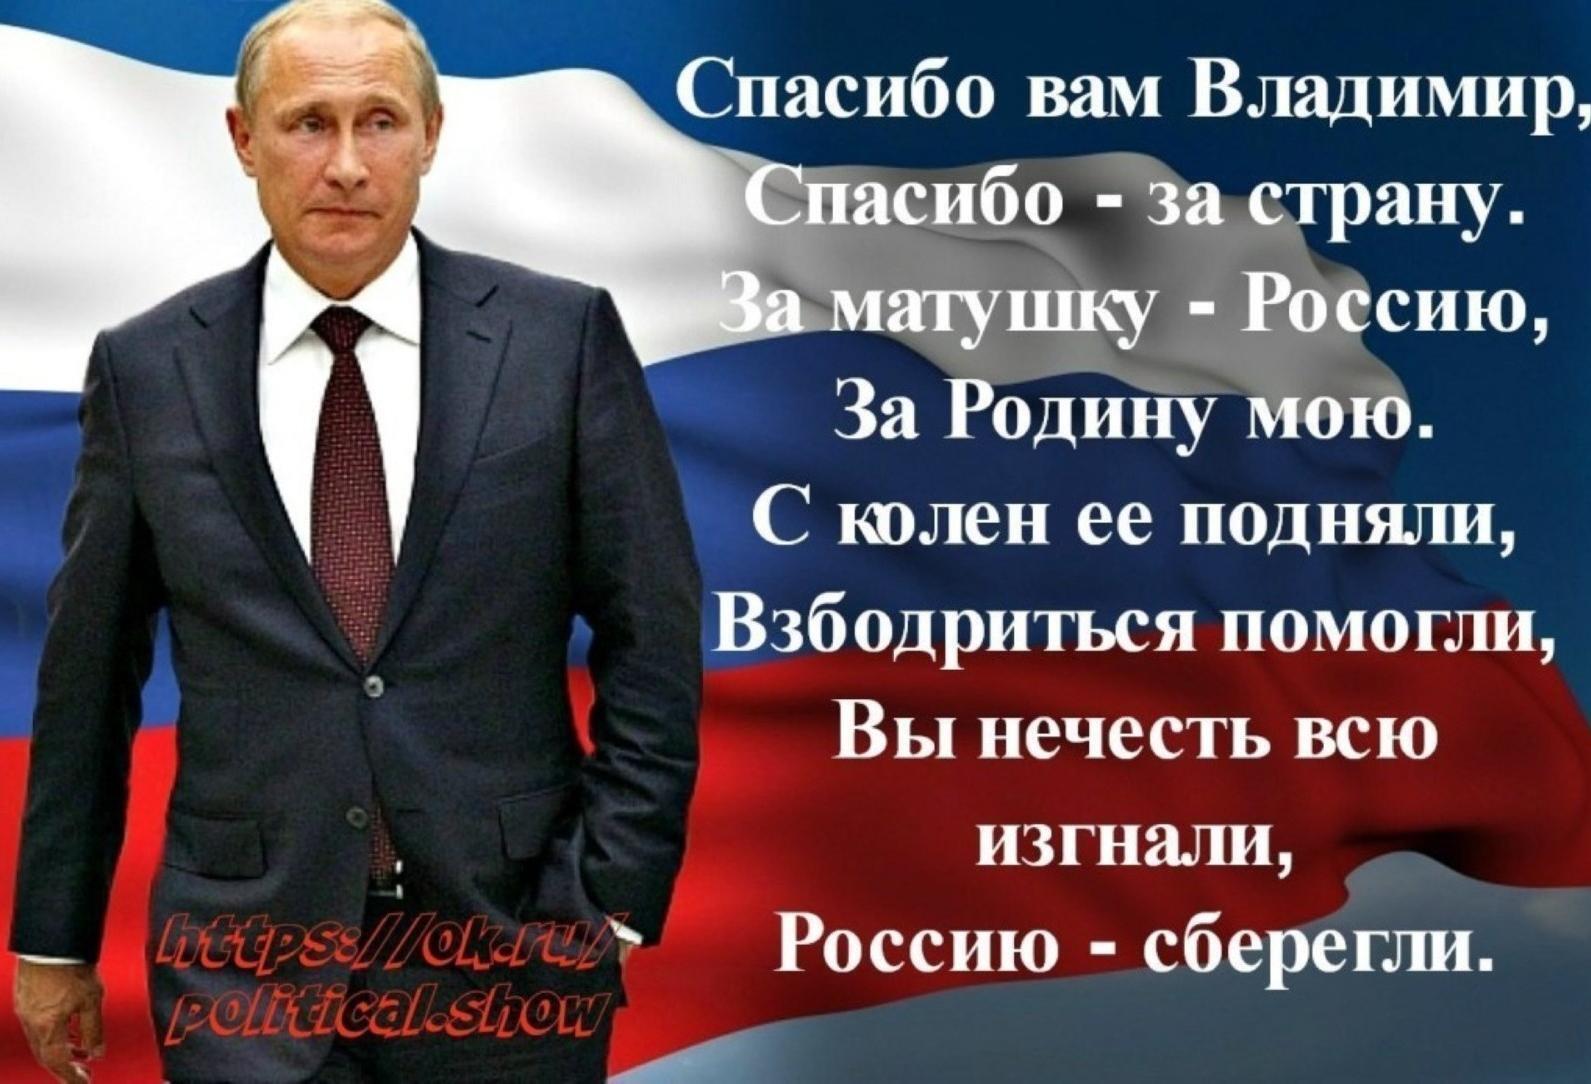 Почему россию уважают. Стихи про президента. Горжусь своим президентом Путиным. Россия за Путина.